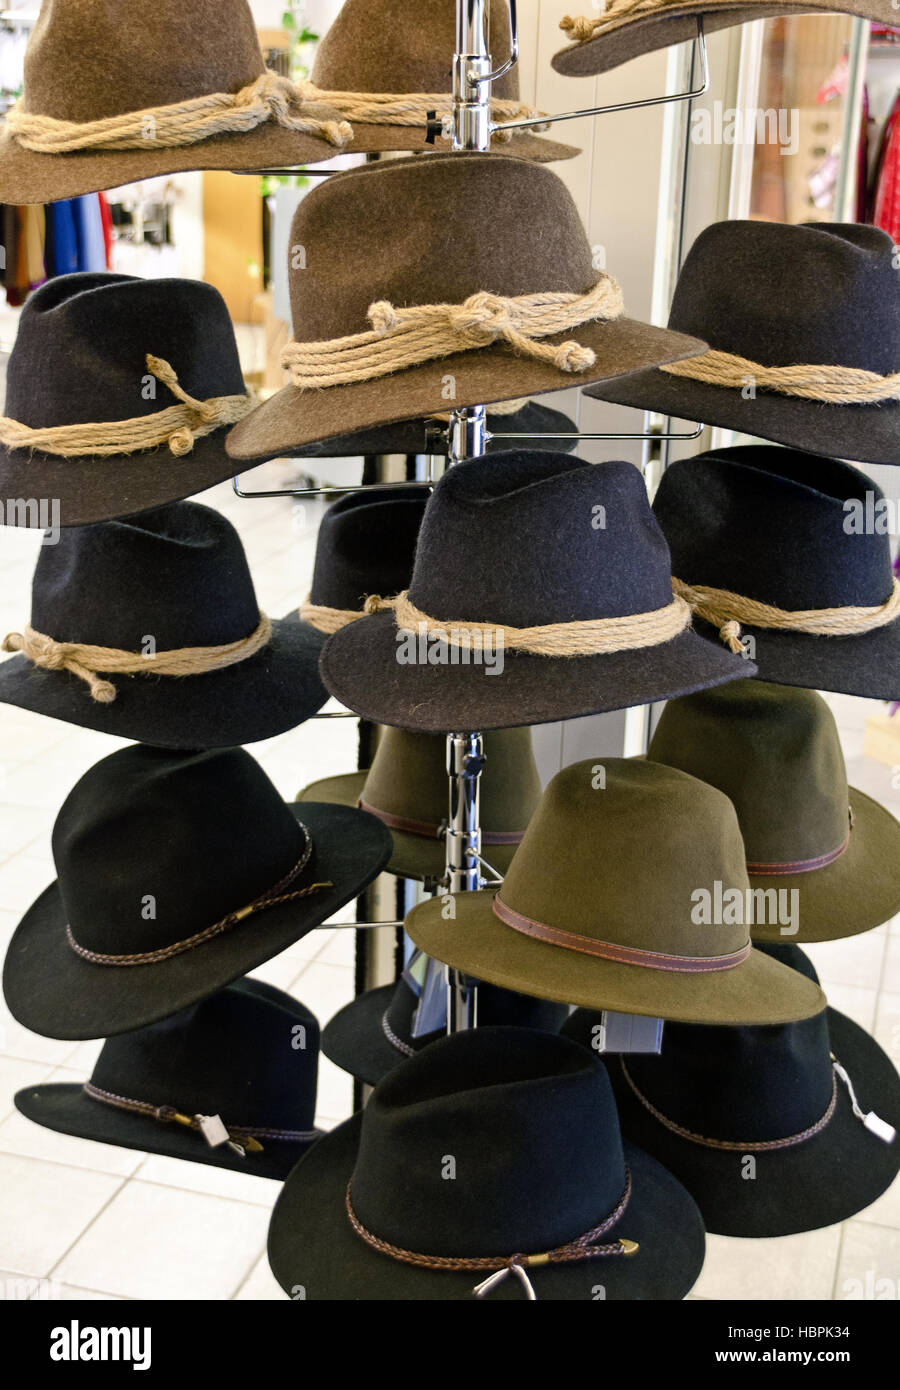 Cappelli di feltro immagini e fotografie stock ad alta risoluzione - Alamy